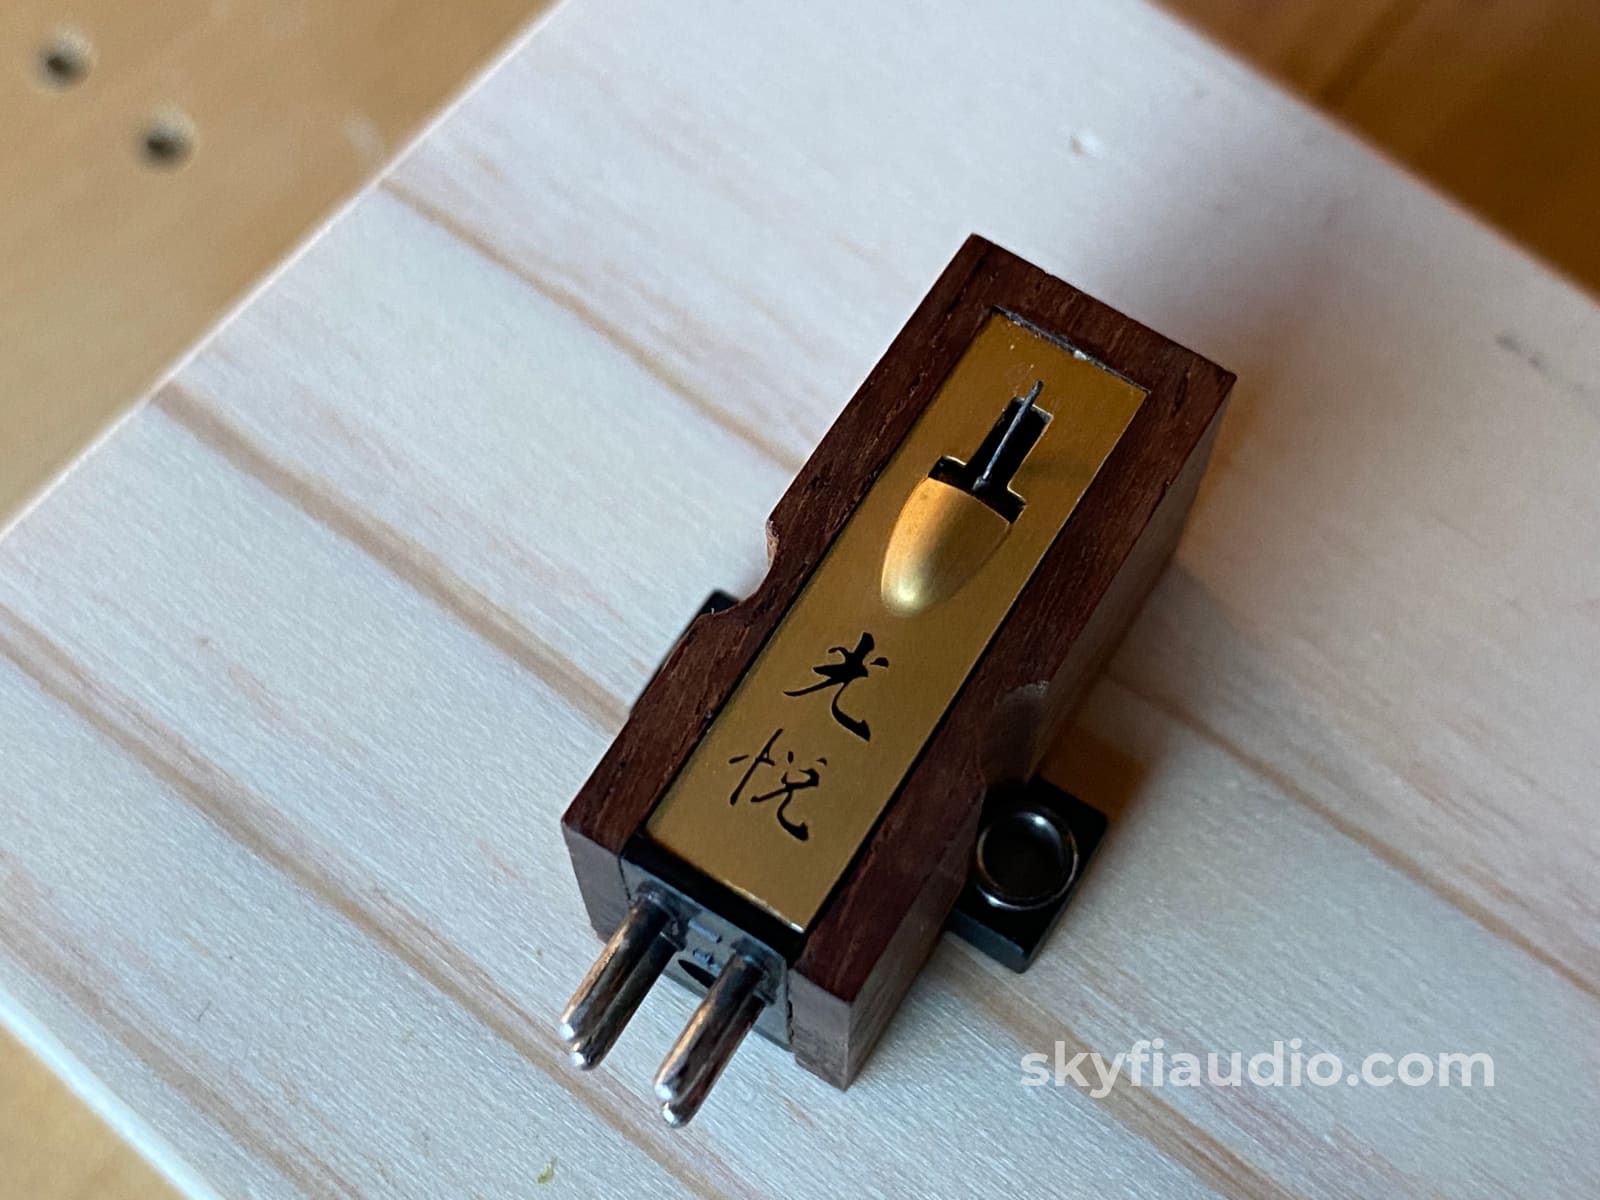 Koetsu Rosewood Signature Moving Coil Cartridge. Handmade In Japan. Phono Cartridge